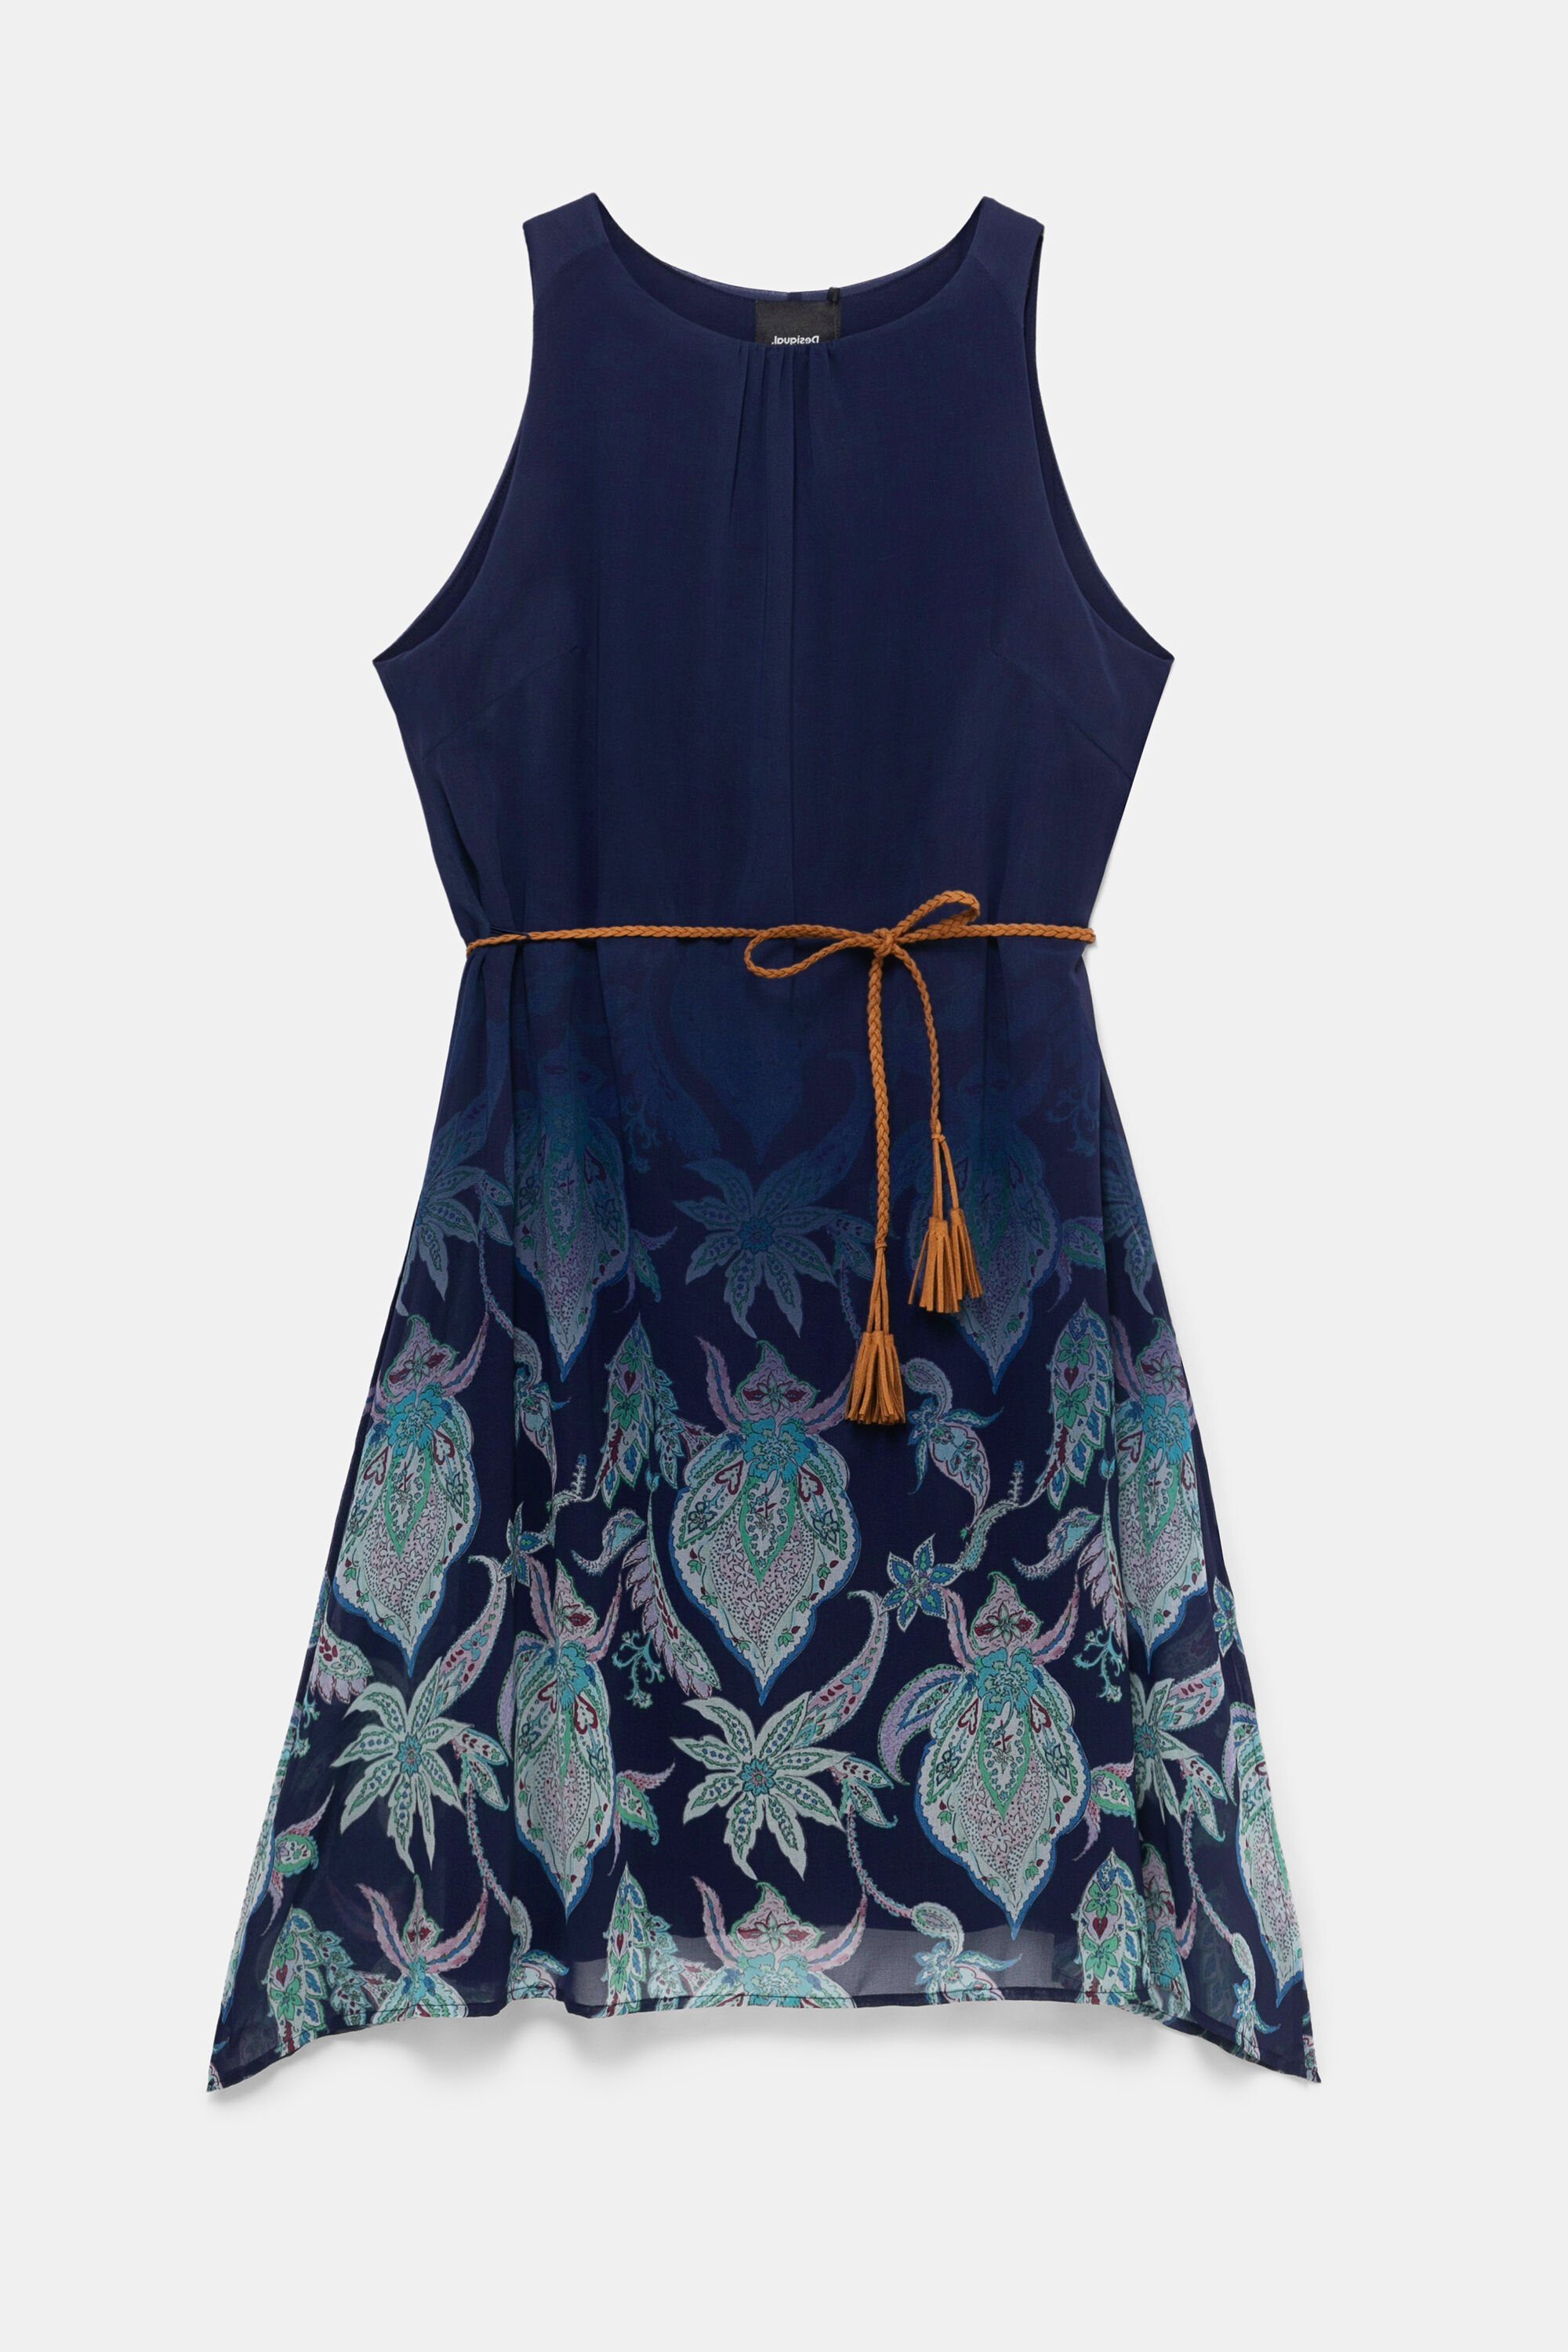 Desigual Sommerkleid Desigual Kleid Damen Jane - 21SWVWAY-5000